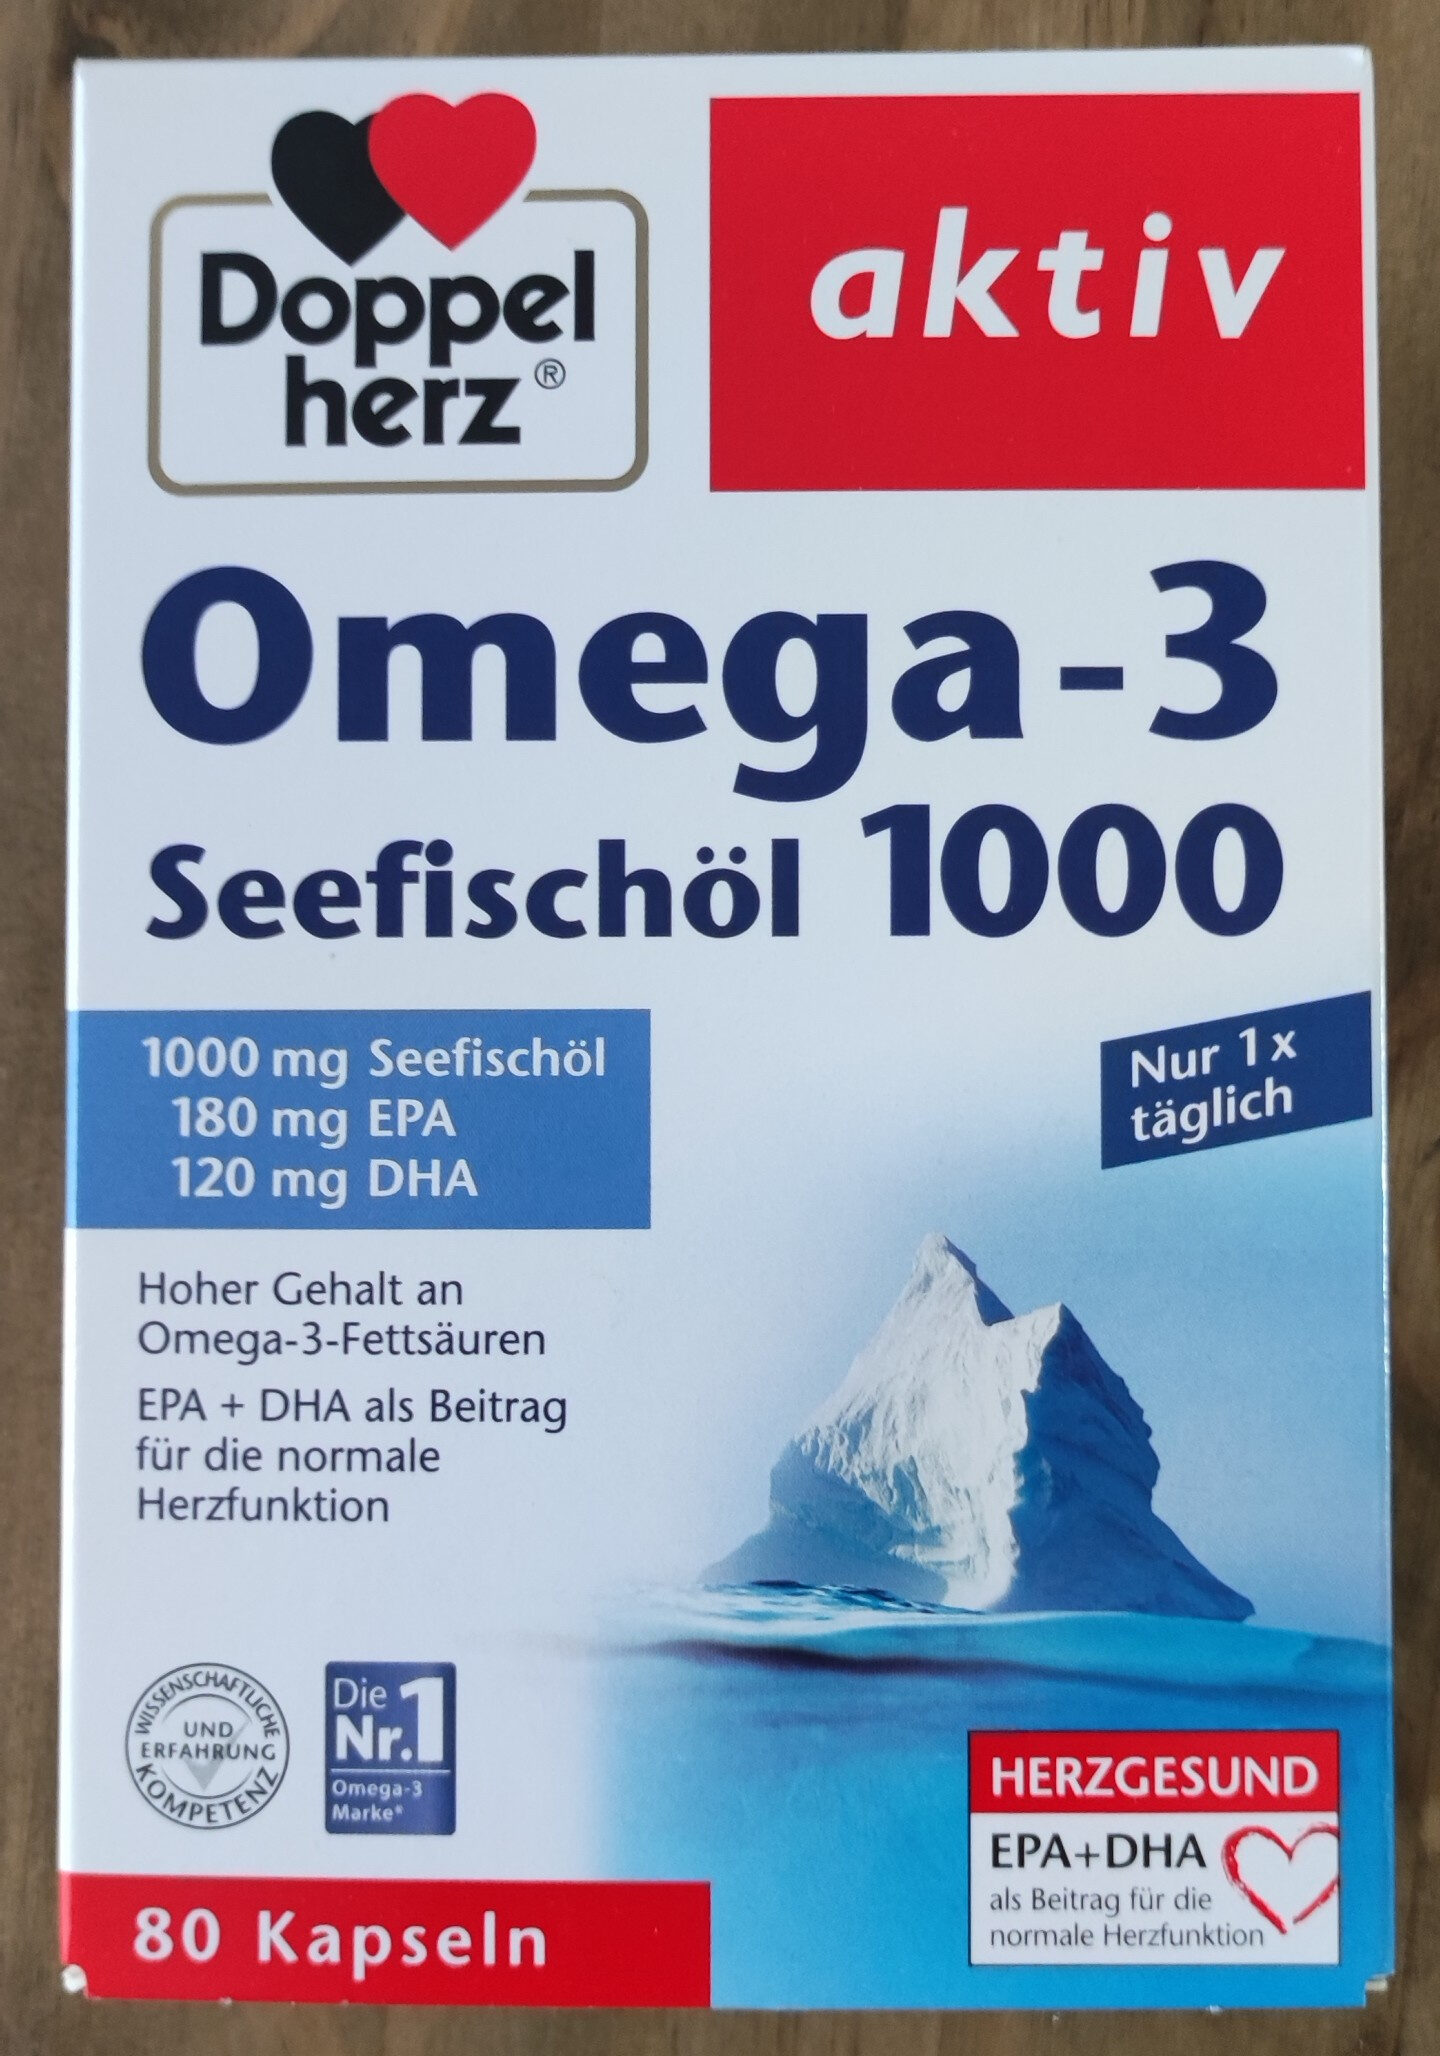 Omega-3 Seefischöl 1000 - نتاج - de